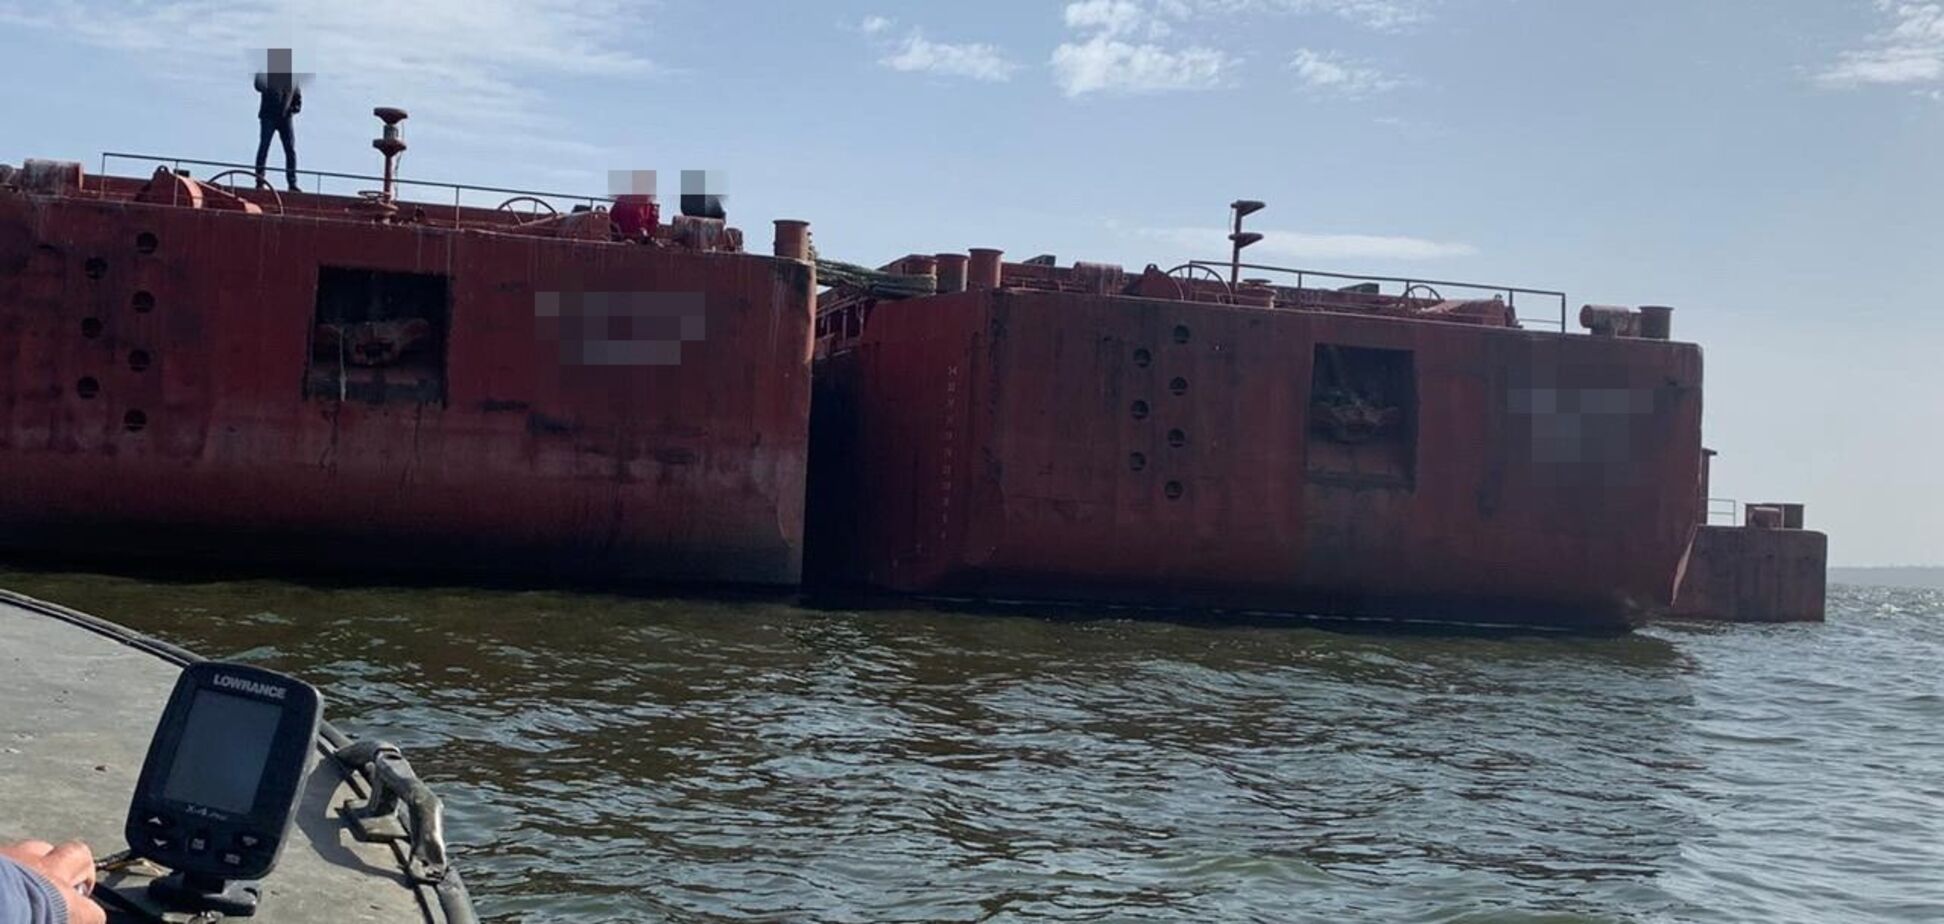 НАБУ і СБУ прийшли з обшуками в Дунайське пароплавство: розшукали зниклі кораблі